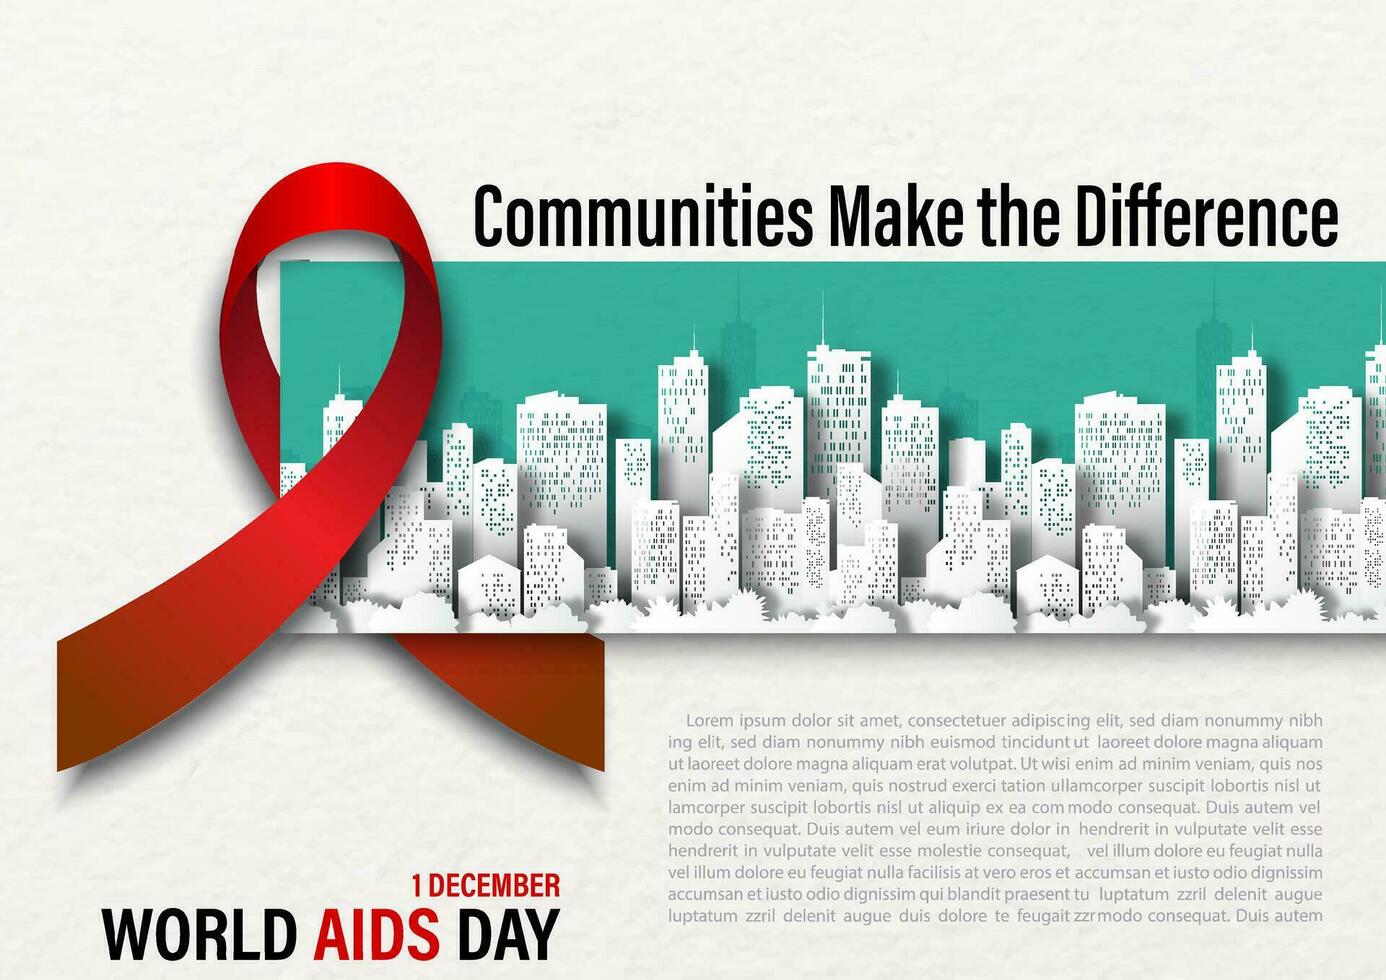 jätte röd band med slogan och de dag, namn av händelse på stadsbild och vit papper mönster bakgrund. värld AIDS dag affisch kampanj i papper skära stil och vektor design.